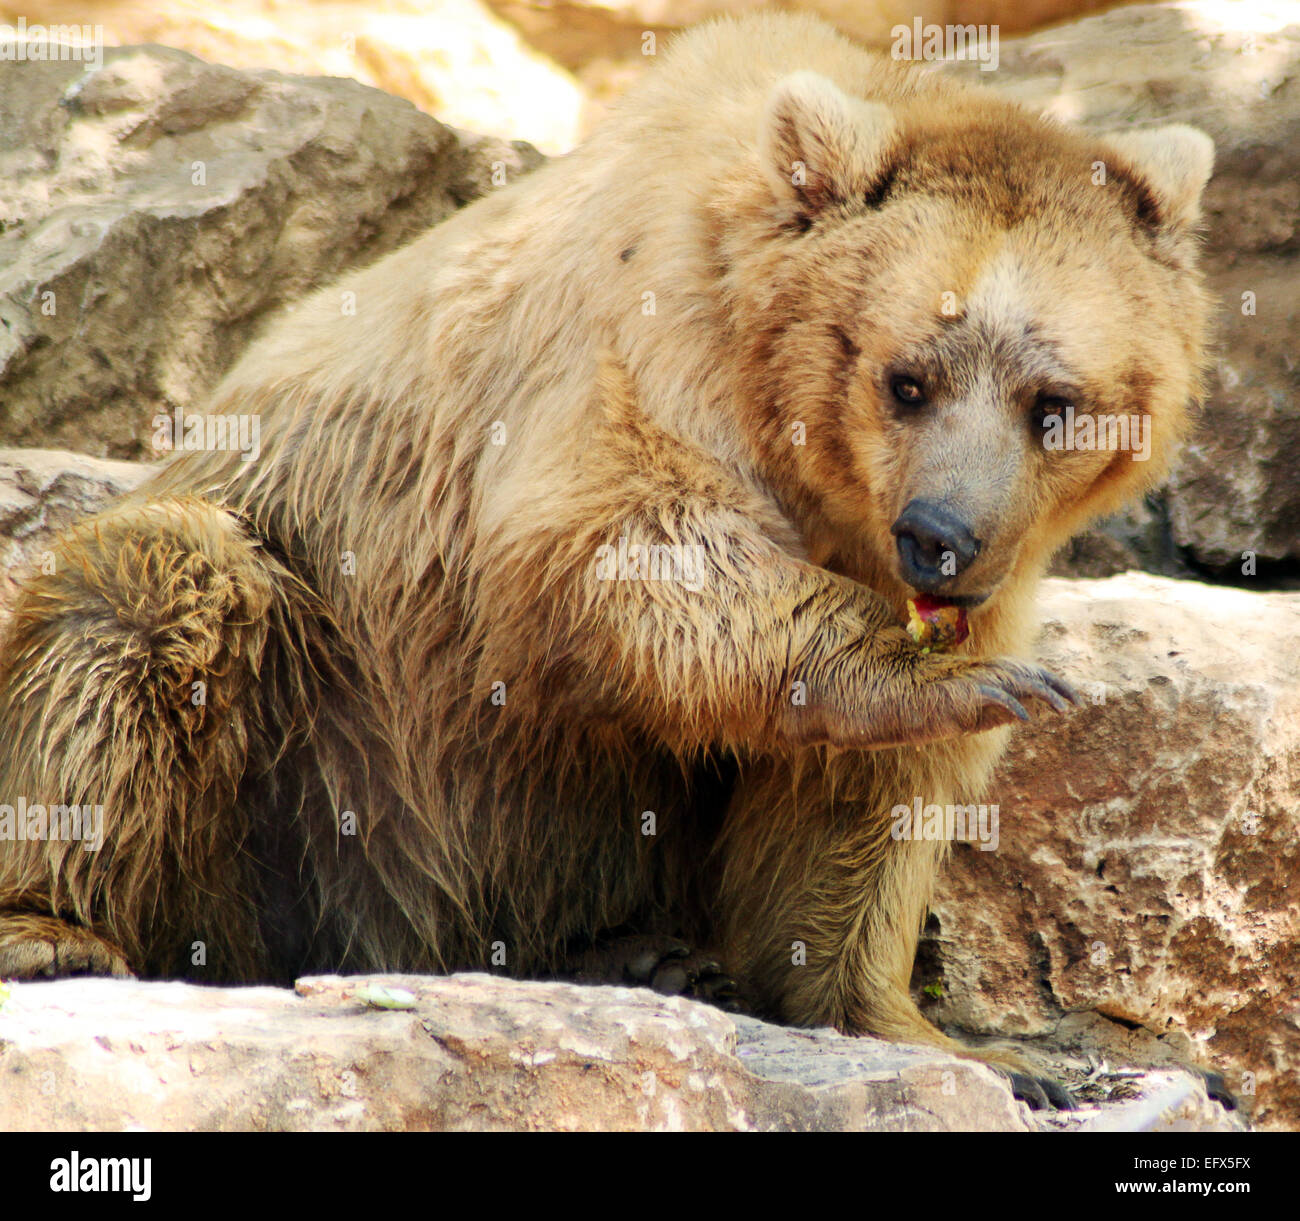 Un oso pardo es comer una manzana roja. Foto de stock